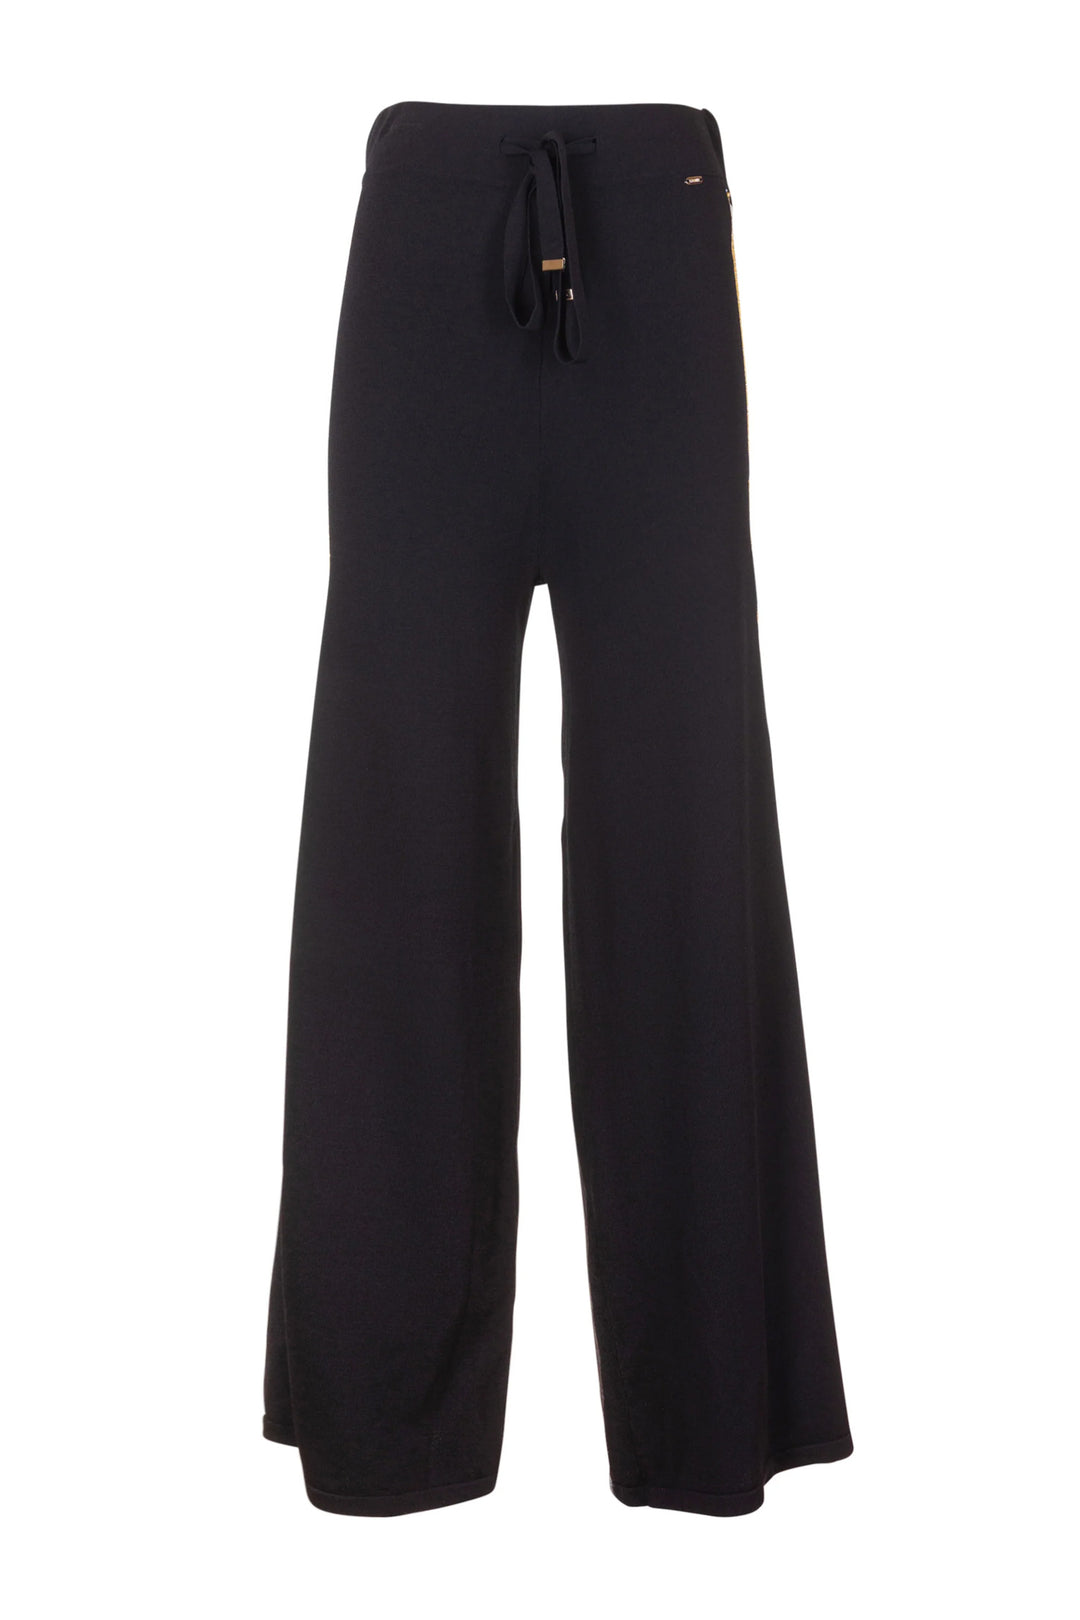 FRACOMINA Pantalone flare nero in maglia con bande laterali - Mancinelli 1954